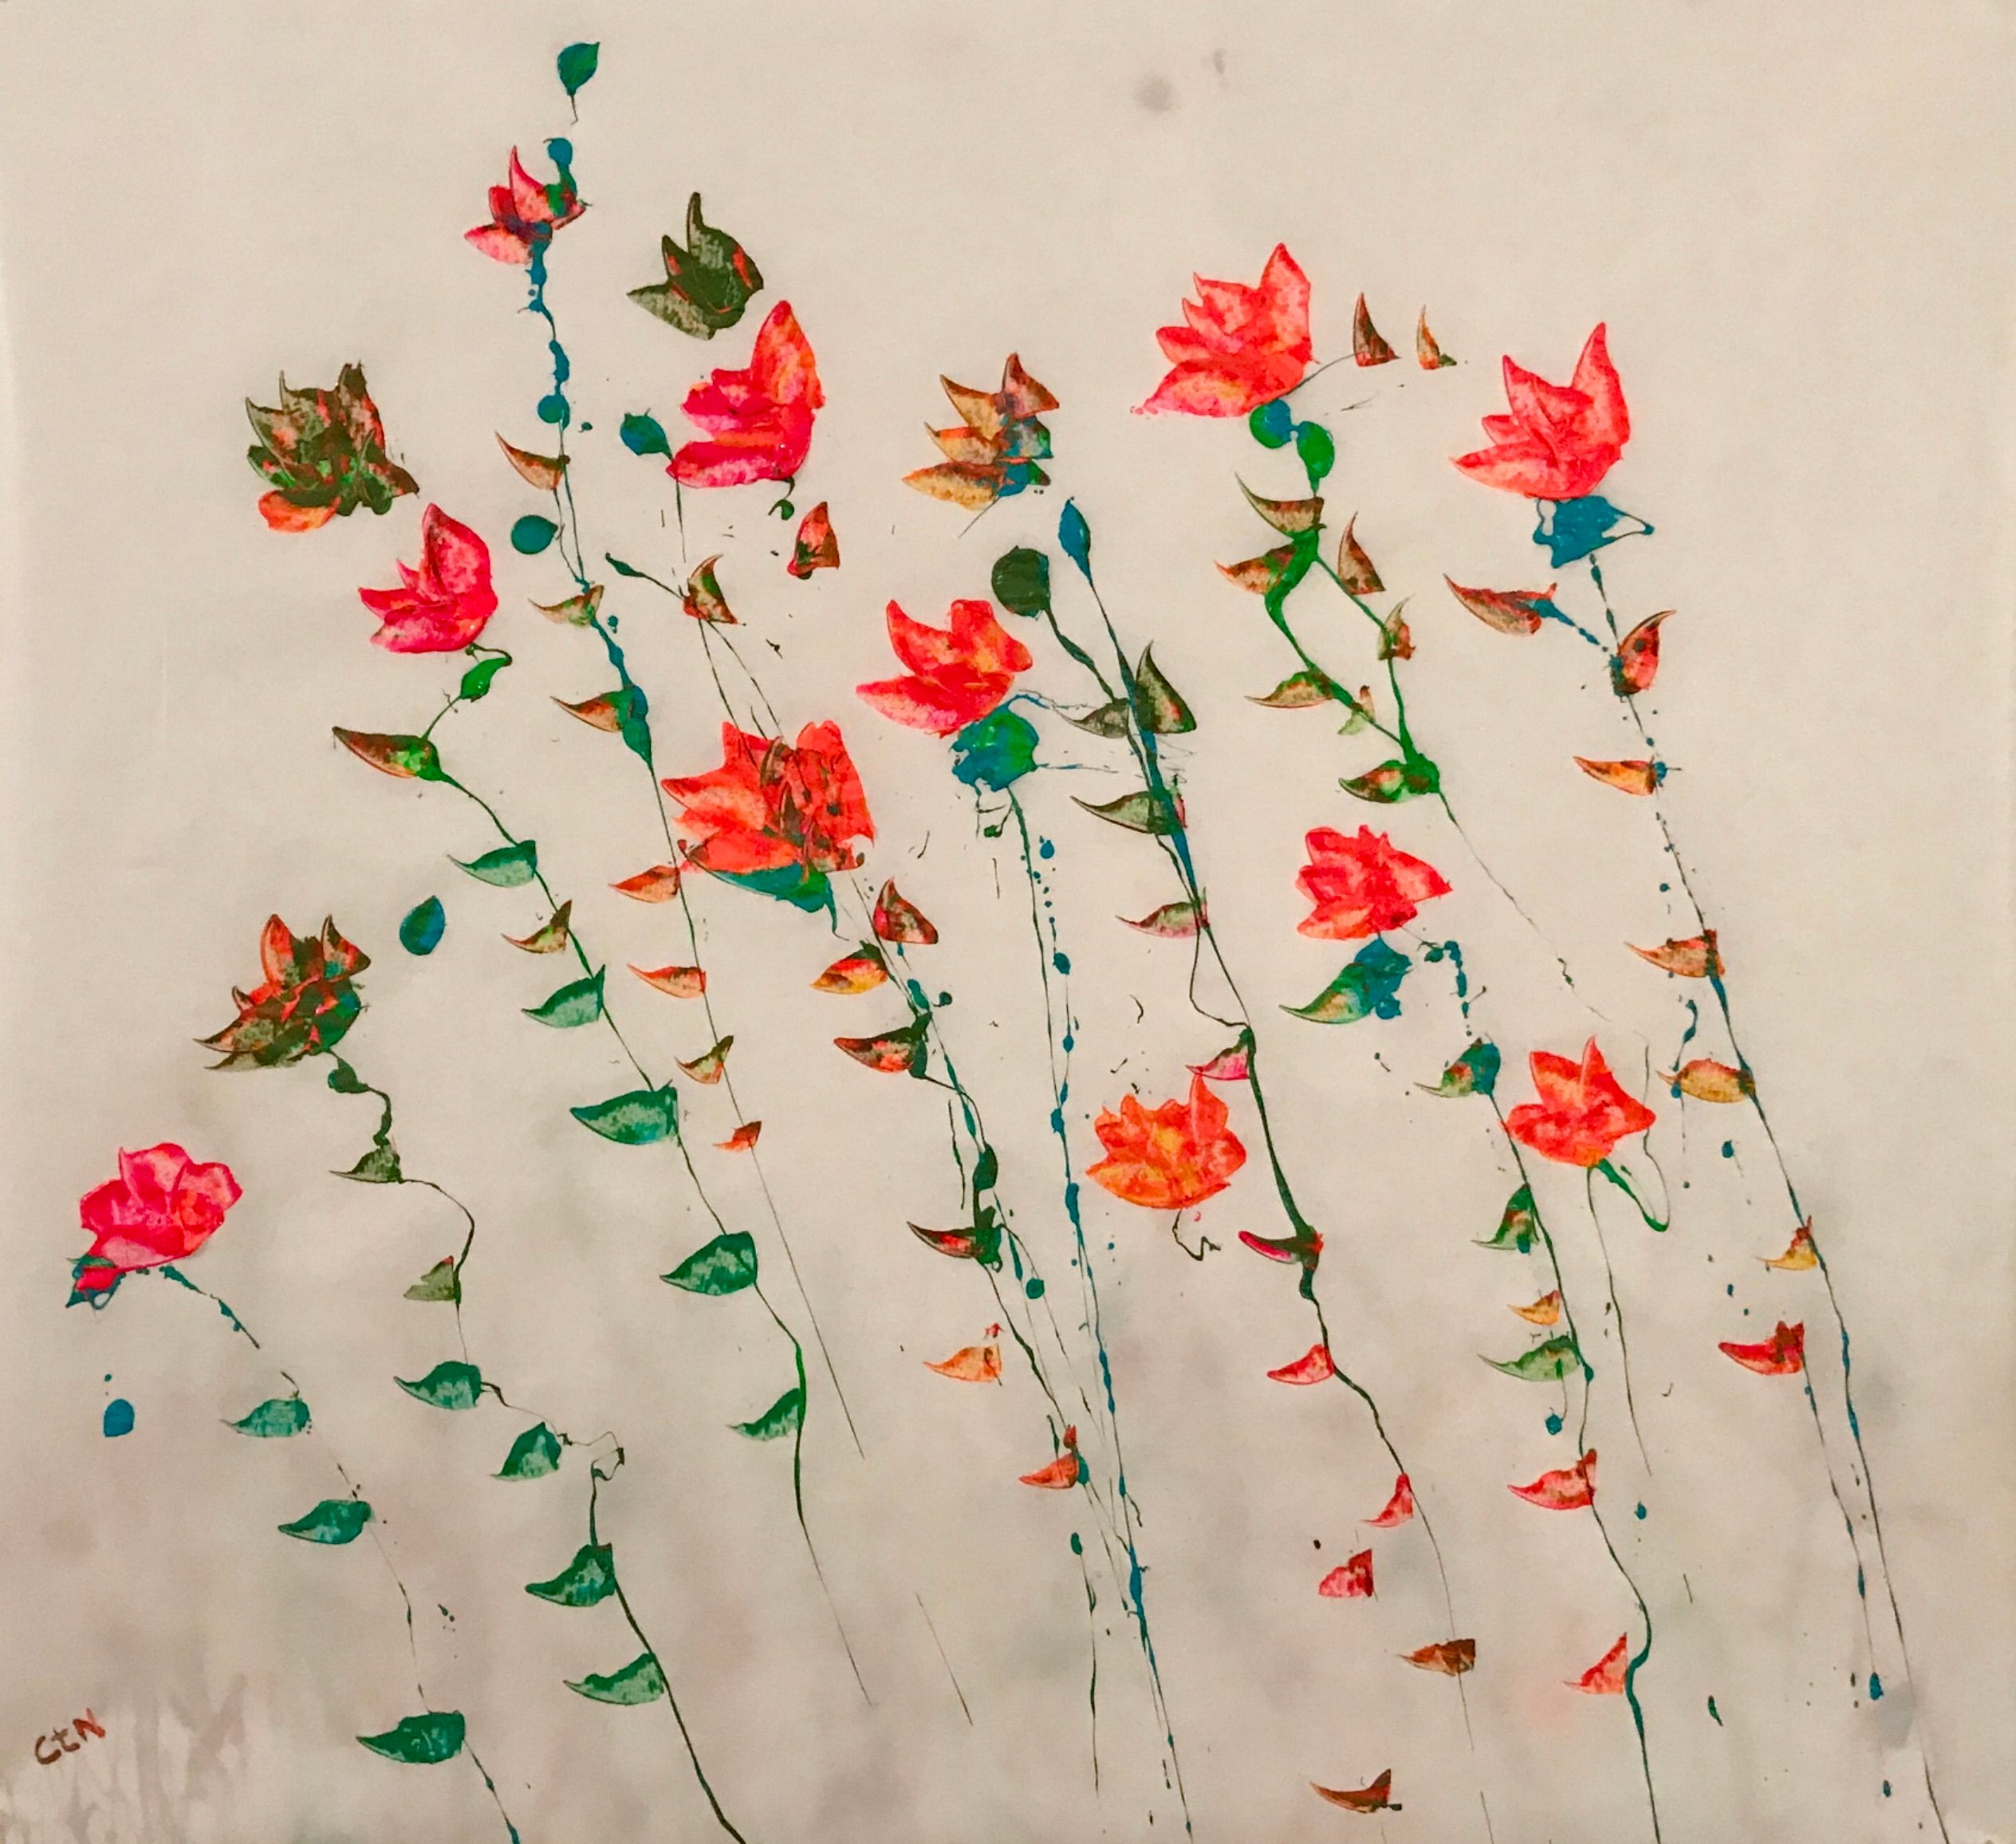 "Endlich frei" der Künstlerin Caroline te Neues, ist eine figurative abstrakte Blumenmalerei. Zu erwerben bei der online Galerie www.galleristic.com 